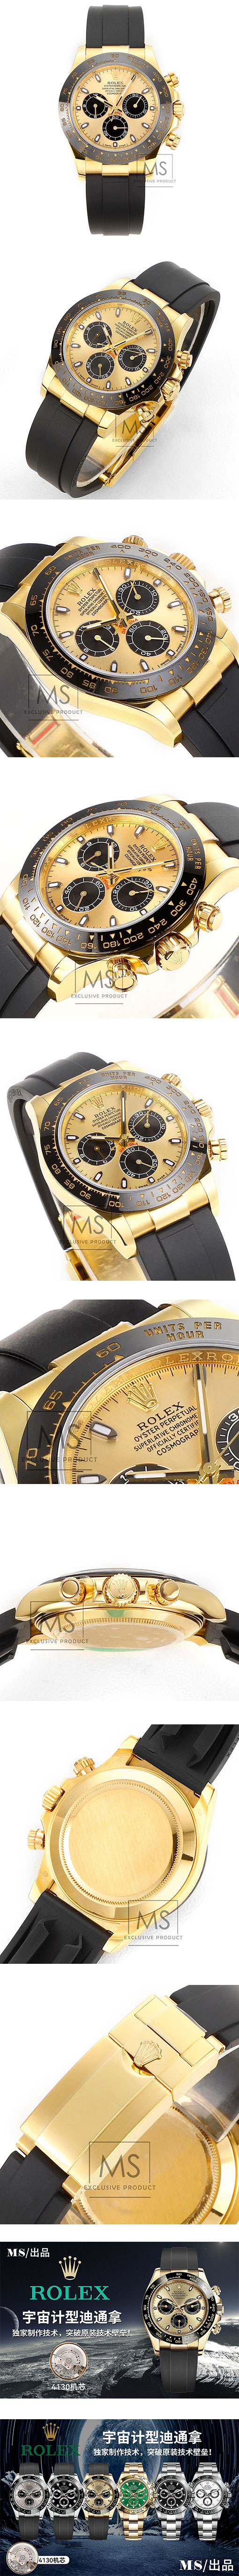 最高級ロレックスコピー時計 デイトナ 116518LN ゴールド/ブラック 7750改良超薄い4130ムーブメント MS工場製